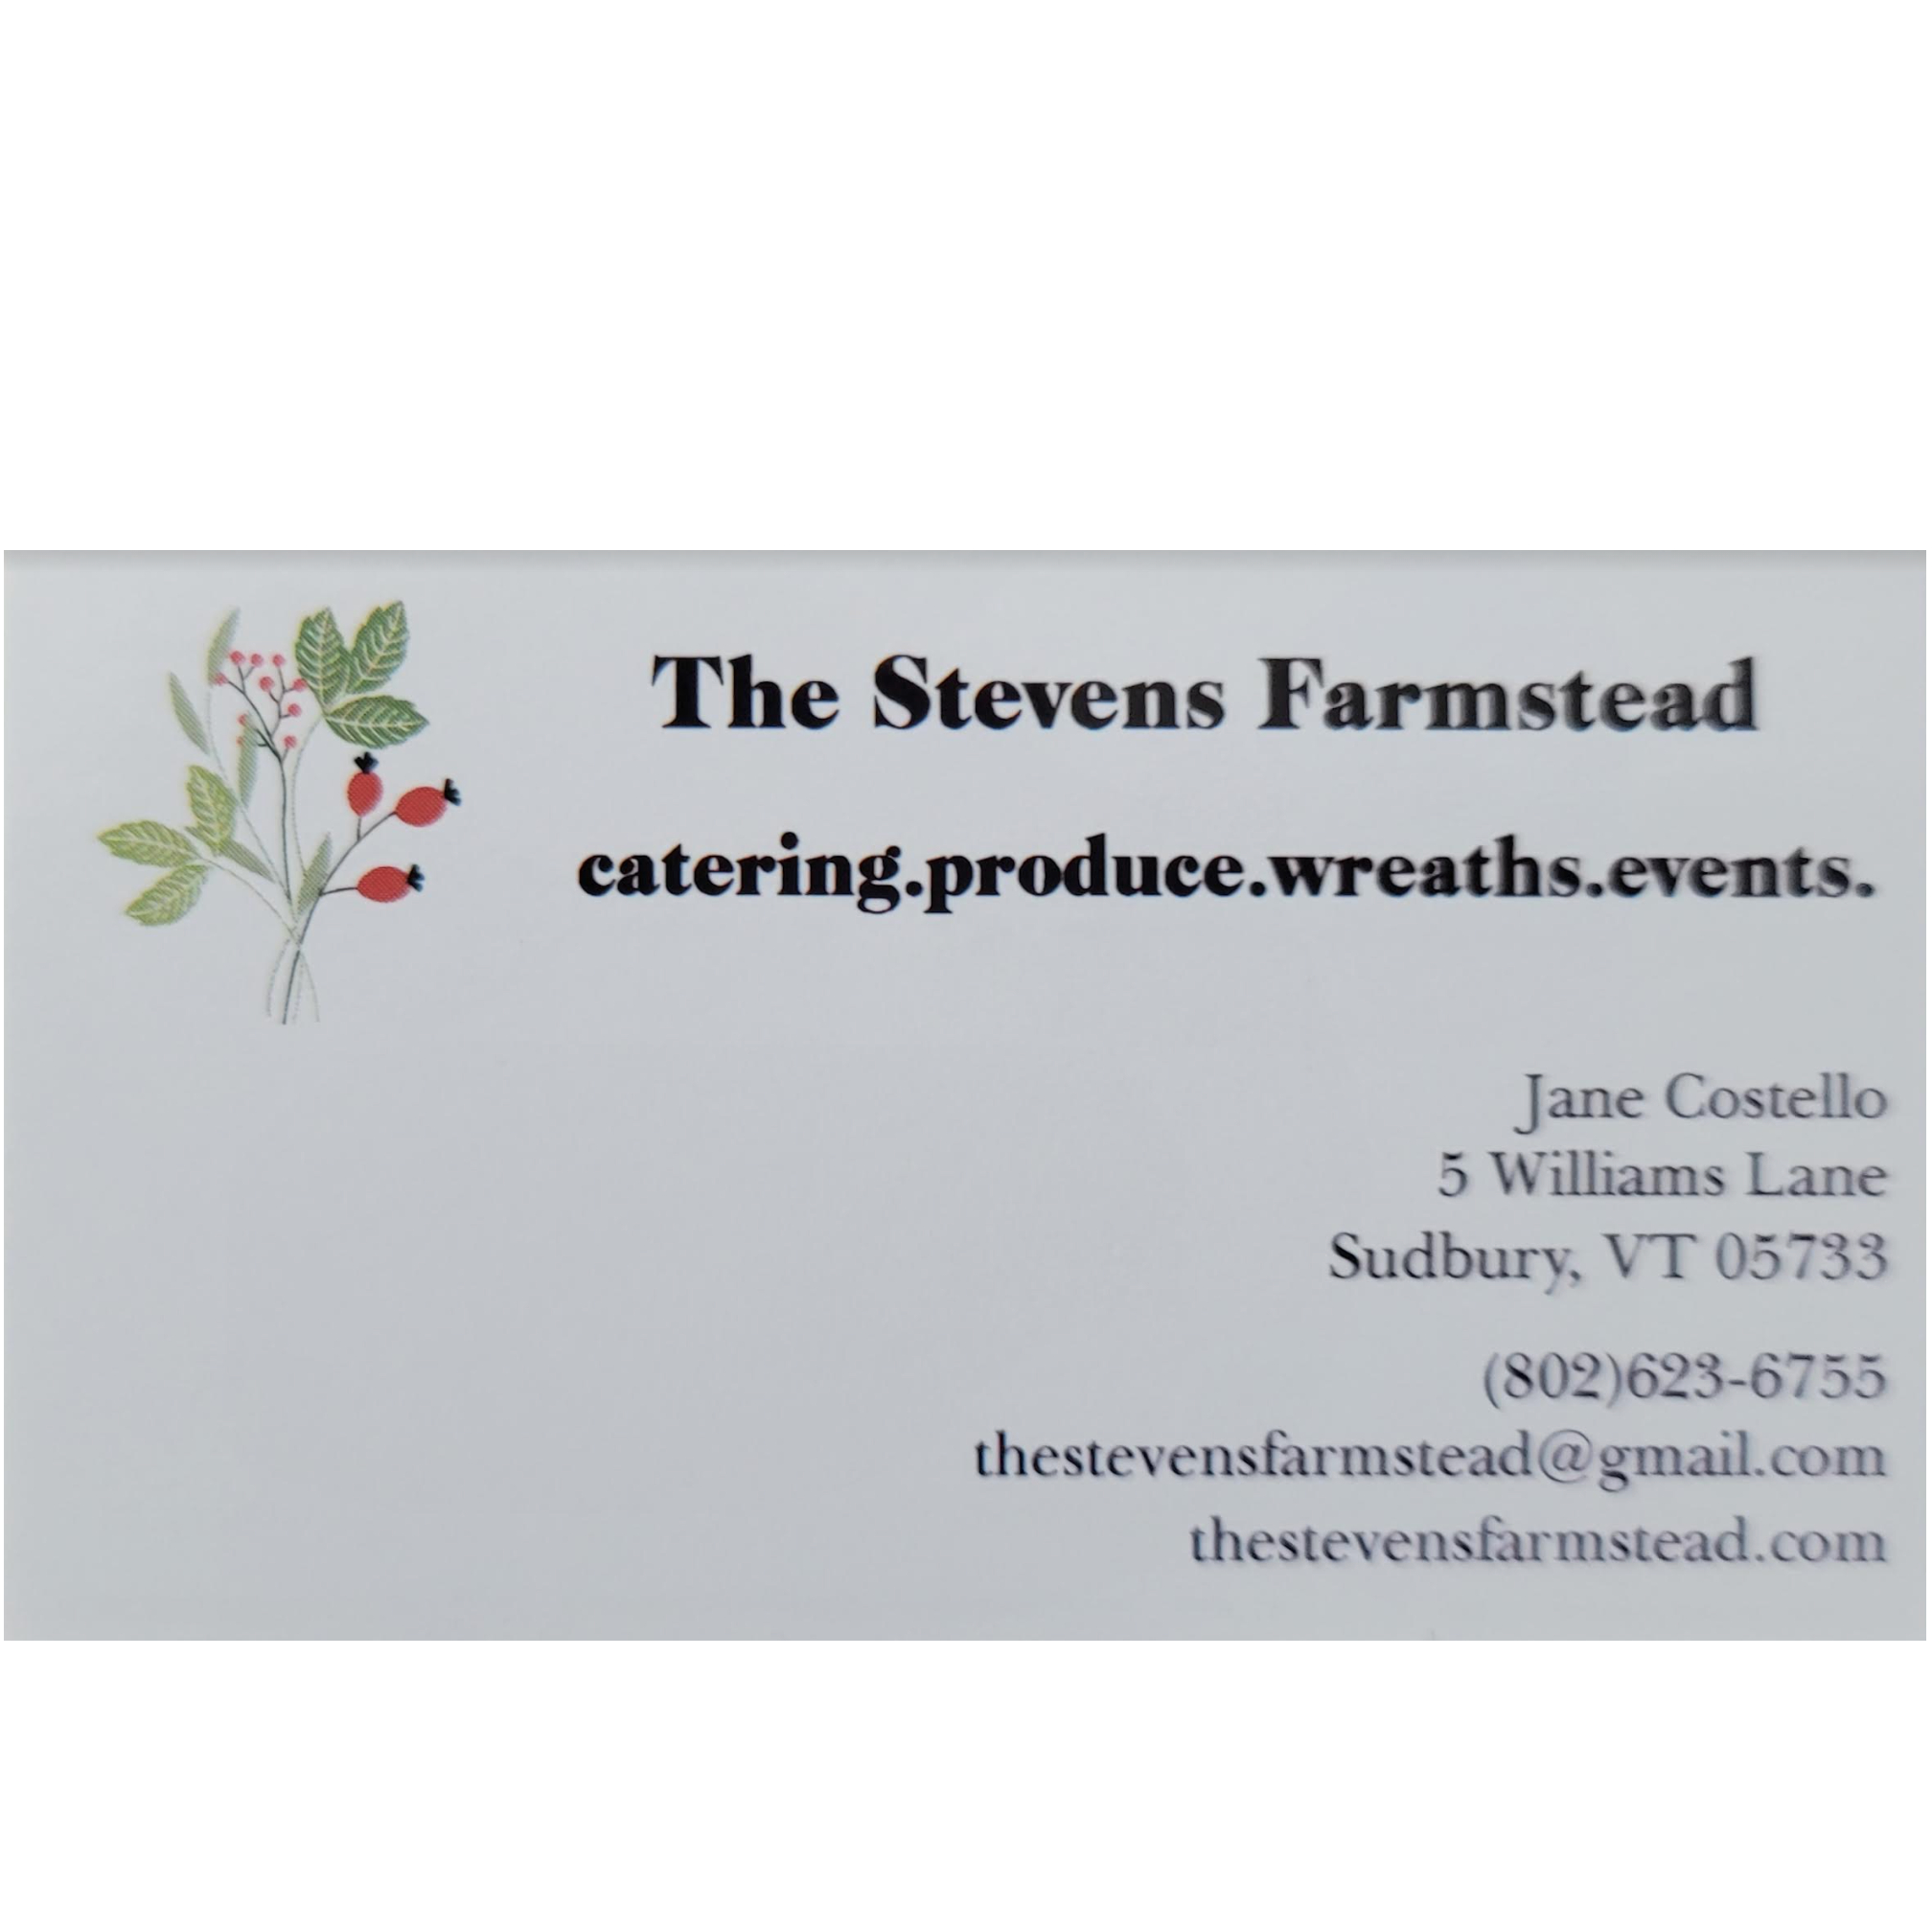 The Stevens Farmstead